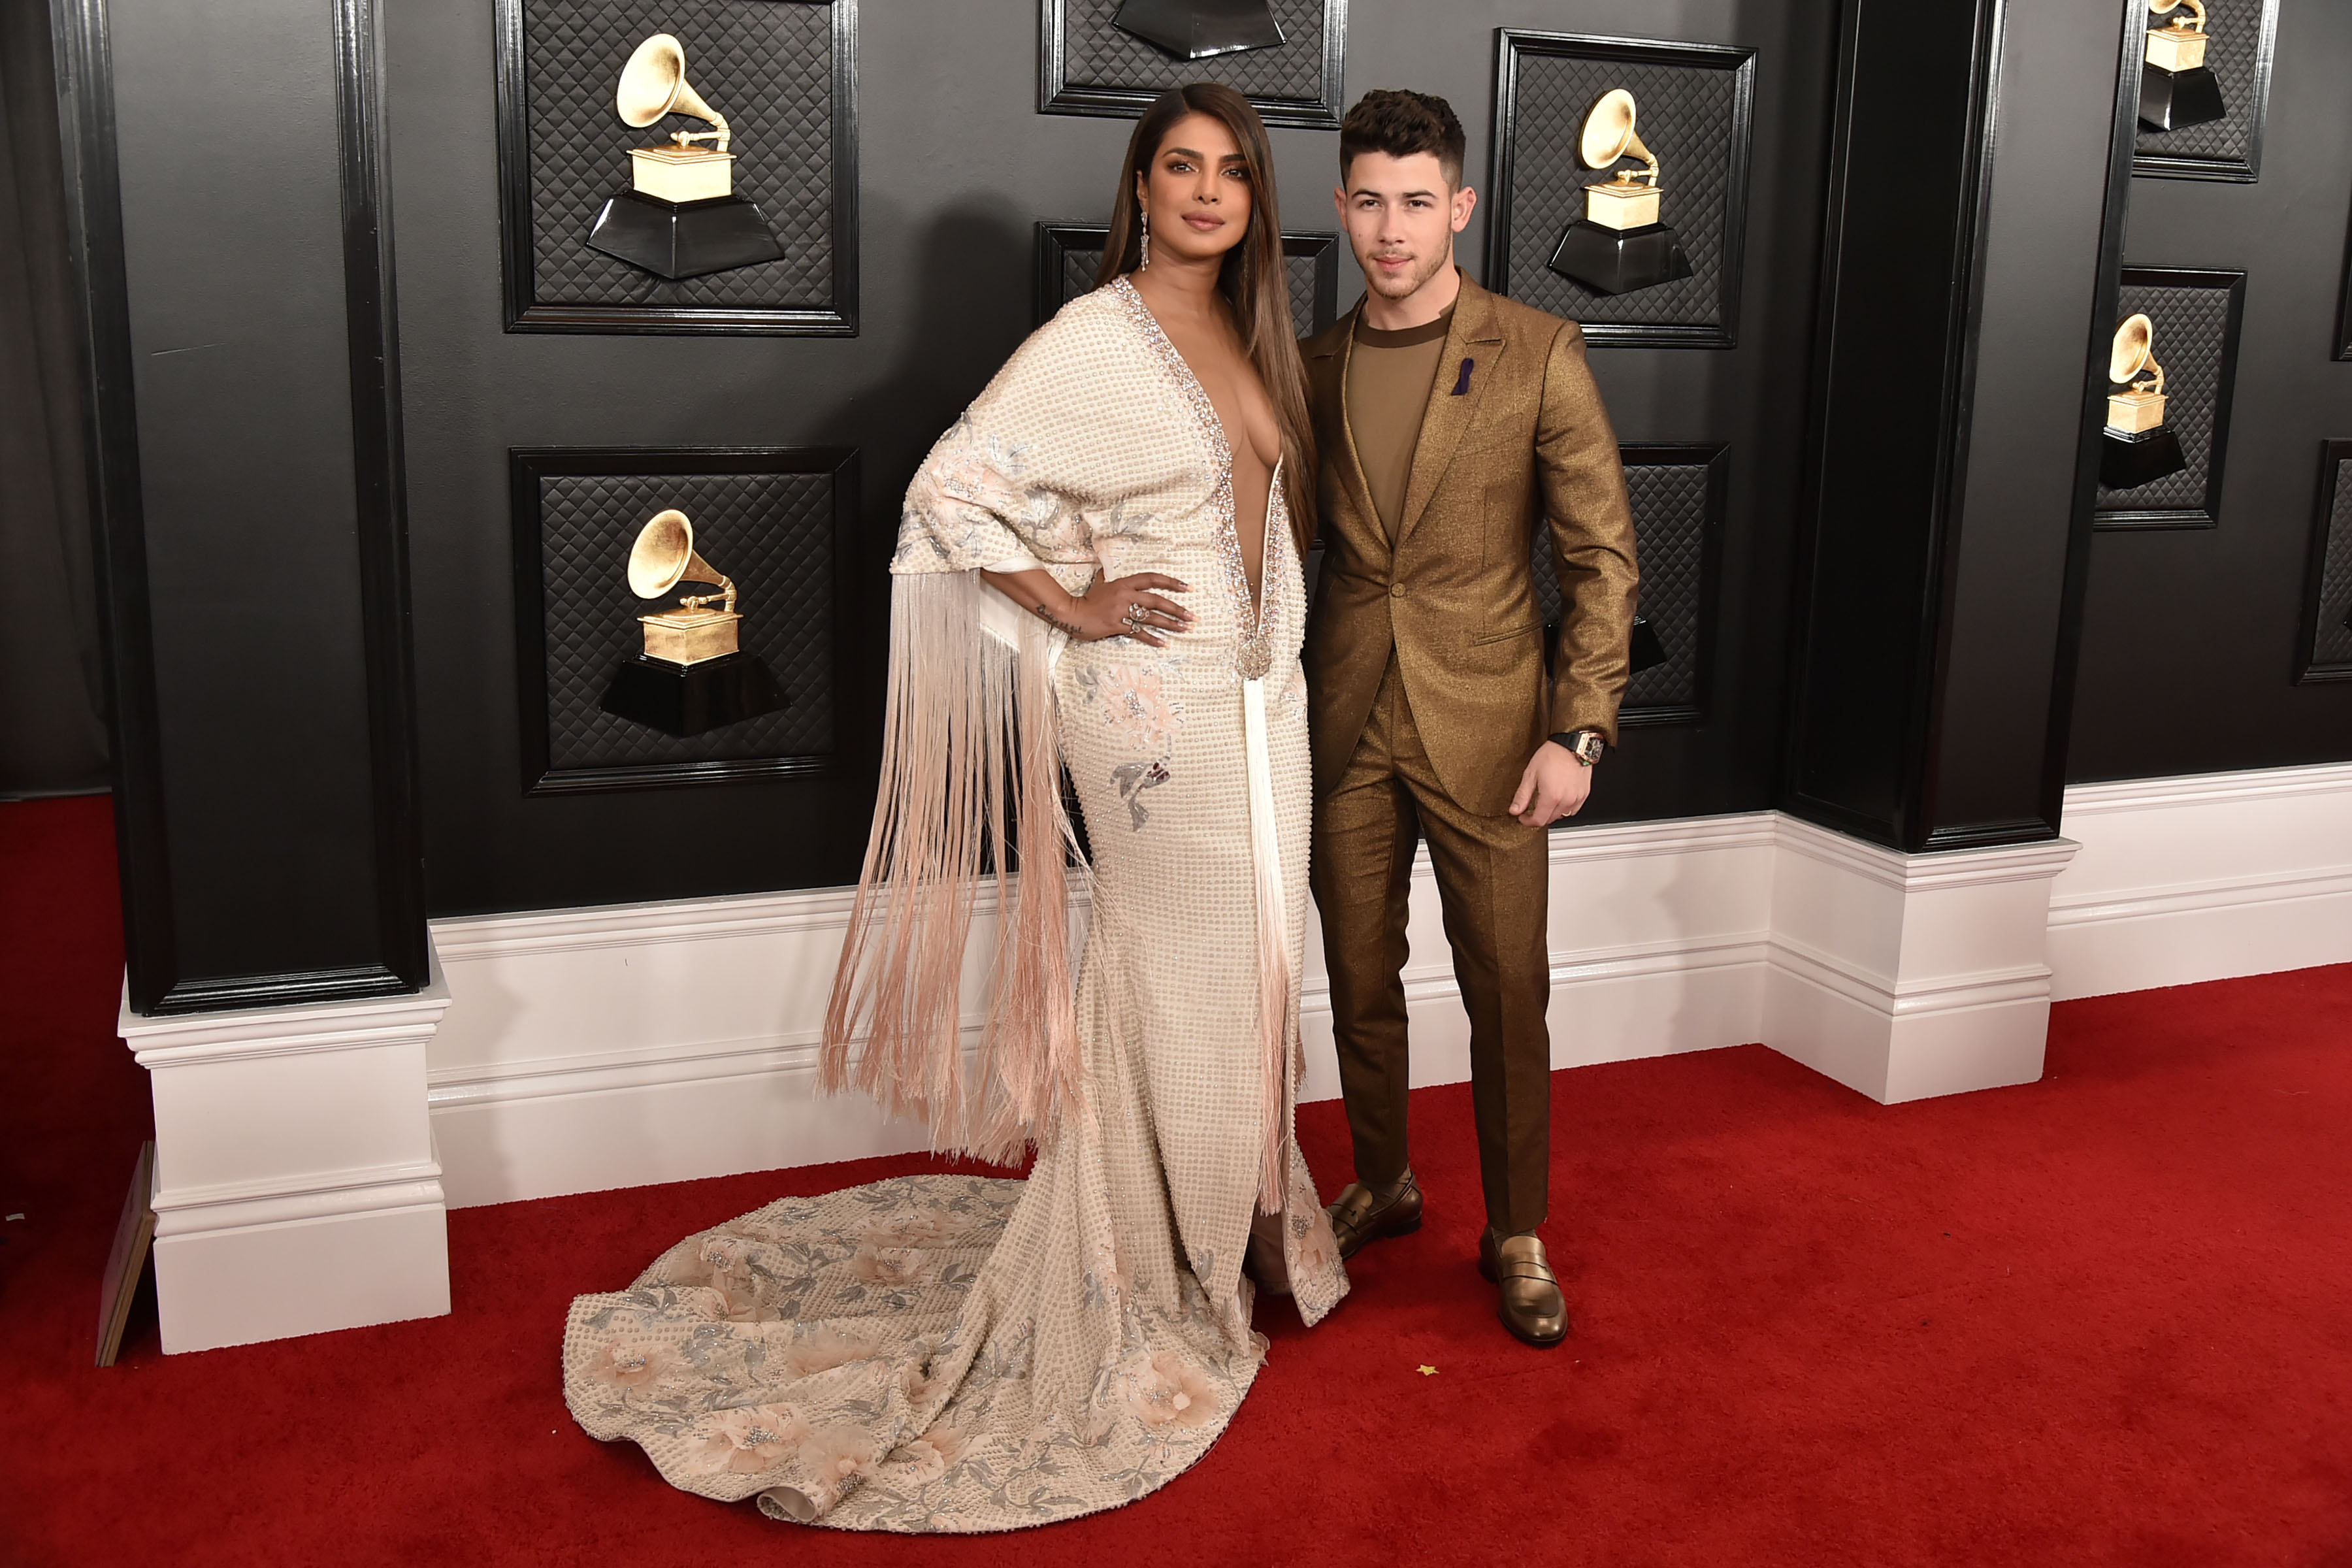 Nick Jonas and Priyanka Chopra Jonas at the Grammys